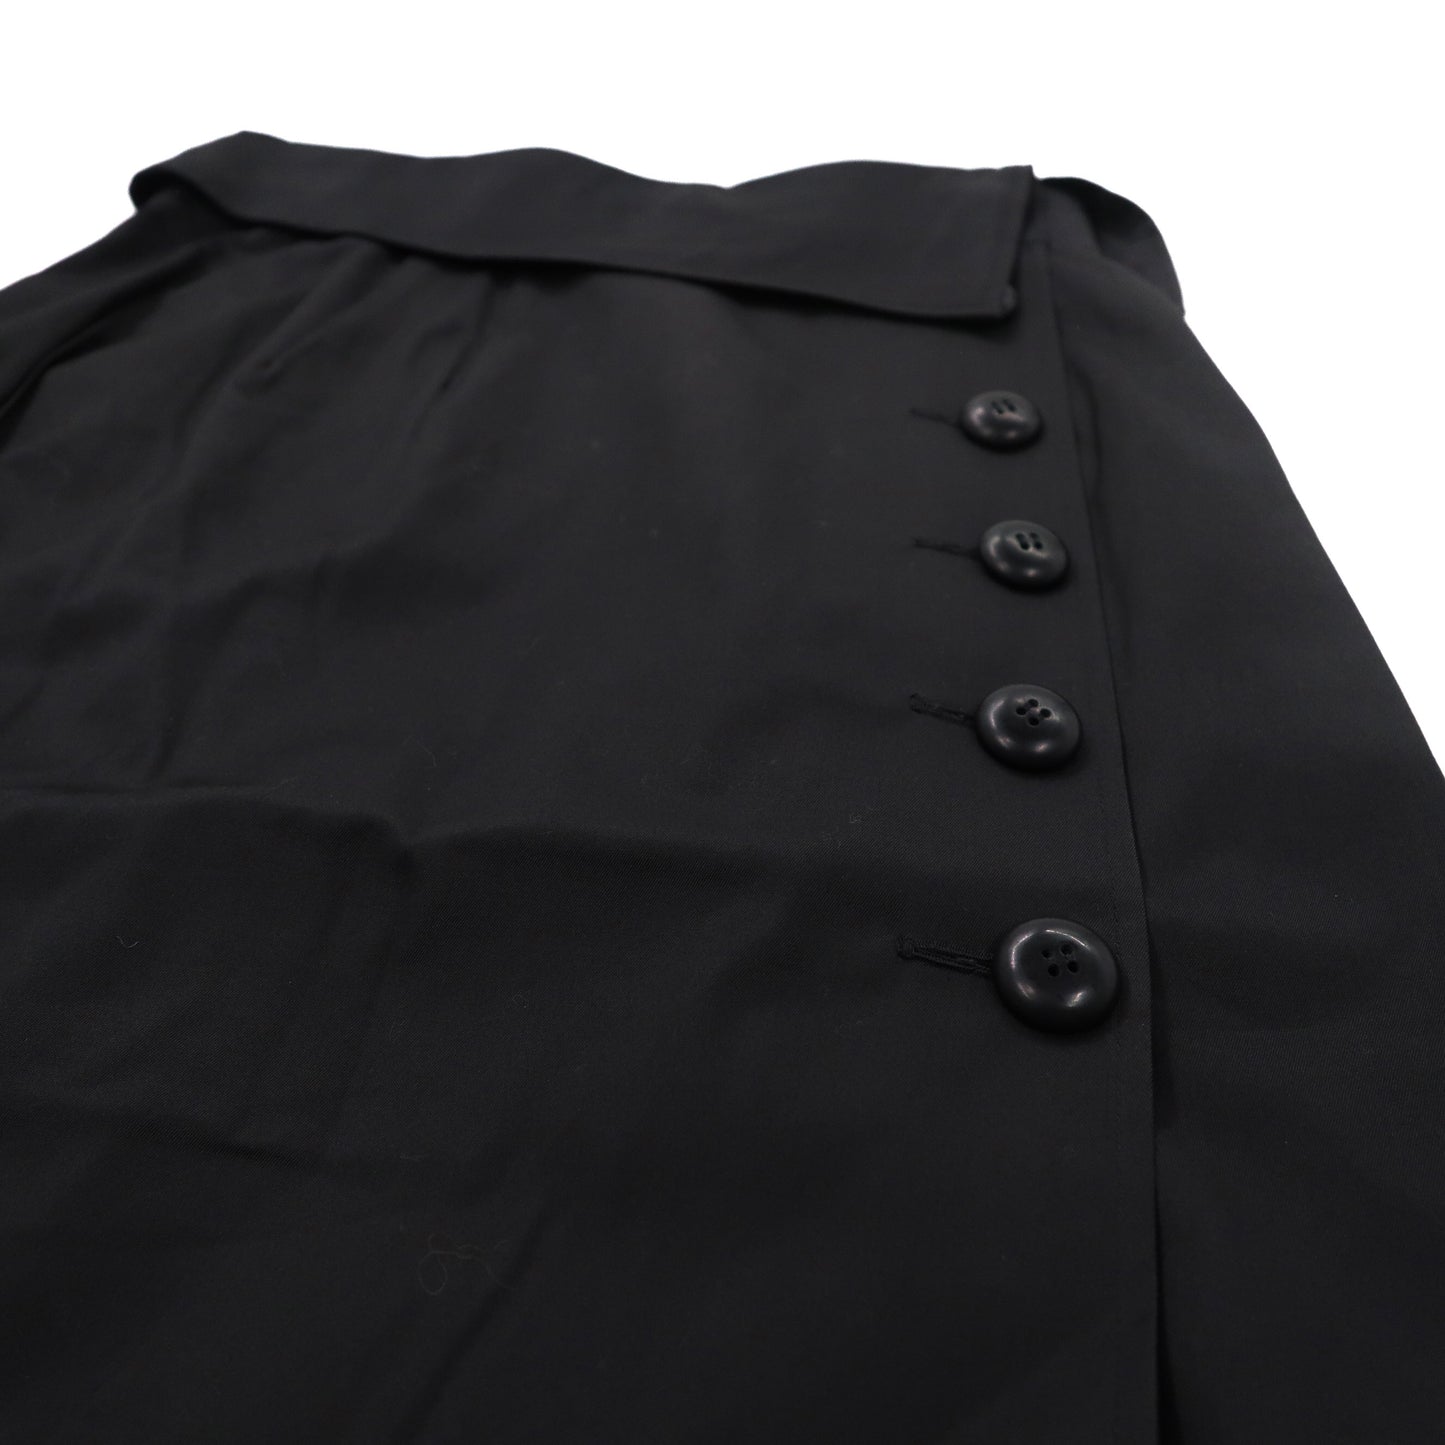 Christian Dior ハイウエスト ラップスカート M ブラック コットン 252CKP12